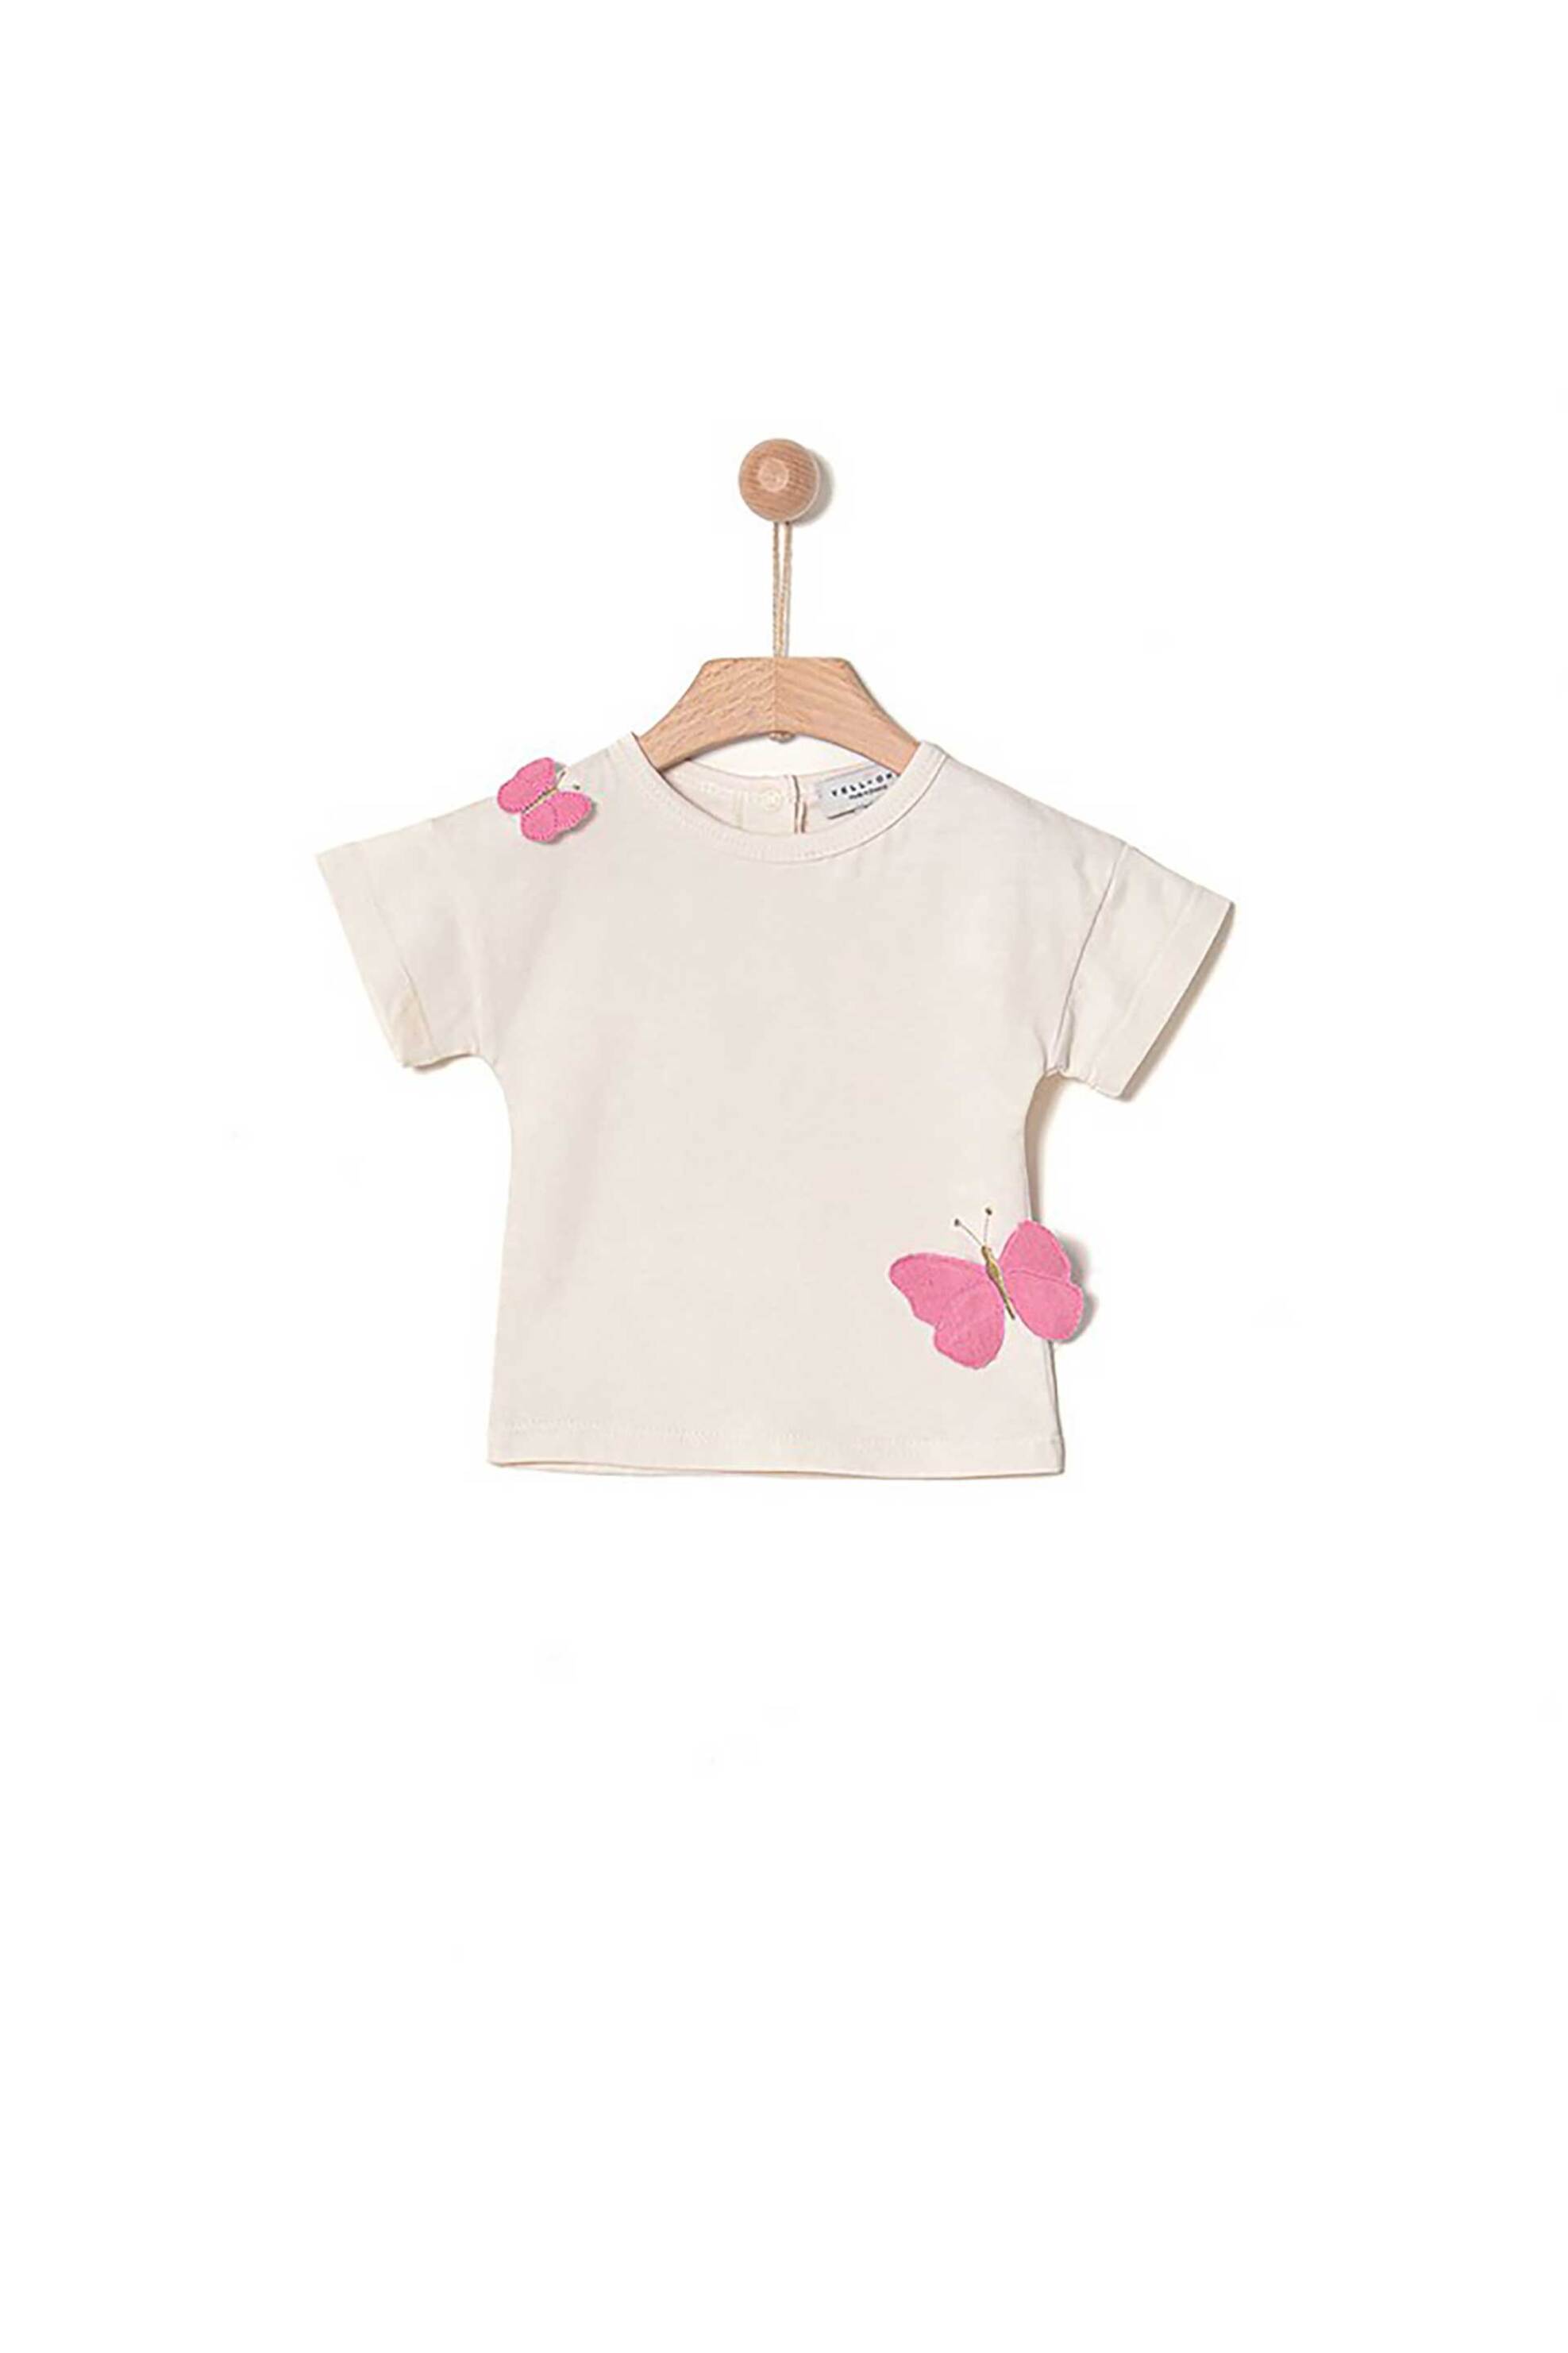 Παιδικά Ρούχα, Παπούτσια & Παιχνίδια > Παιδικά Ρούχα & Αξεσουάρ για Κορίτσια > Παιδικές Μπλούζες για Κορίτσια > Παιδικά T-Shirts για Κορίτσια Yell-oh! παιδικό T-shirt με απλικέ πεταλούδες στο πλάι - 41090335048 Ροζ